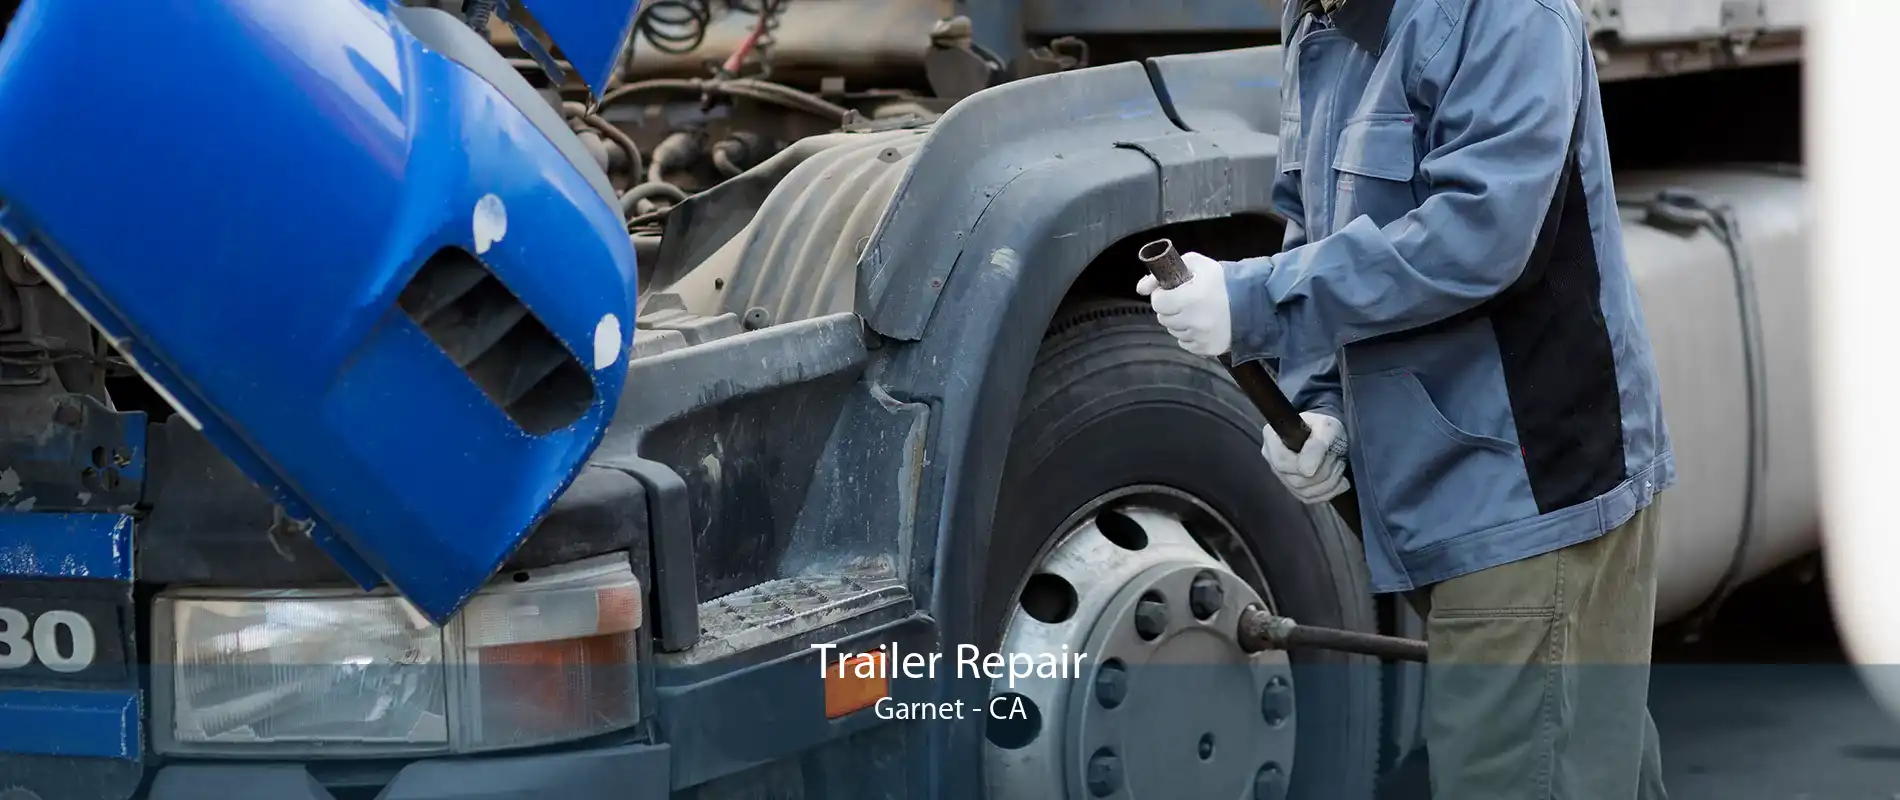 Trailer Repair Garnet - CA